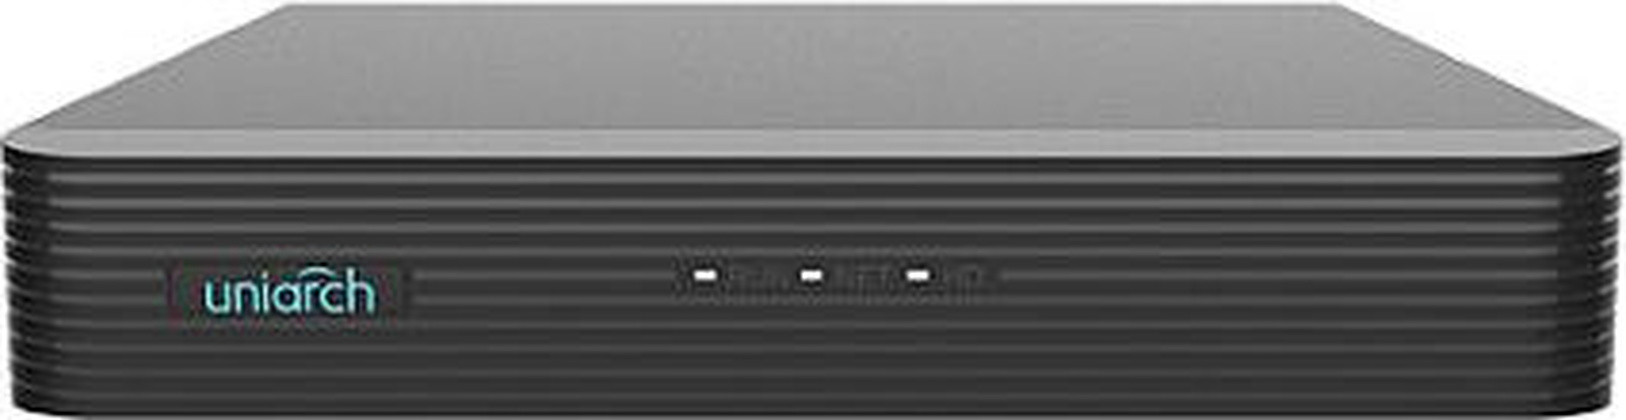 Видеорегистратор 4-канальный "Uniarch" [NVR-104E2-P4], 2USB, RJ45,1xVGA, 1xHDMI